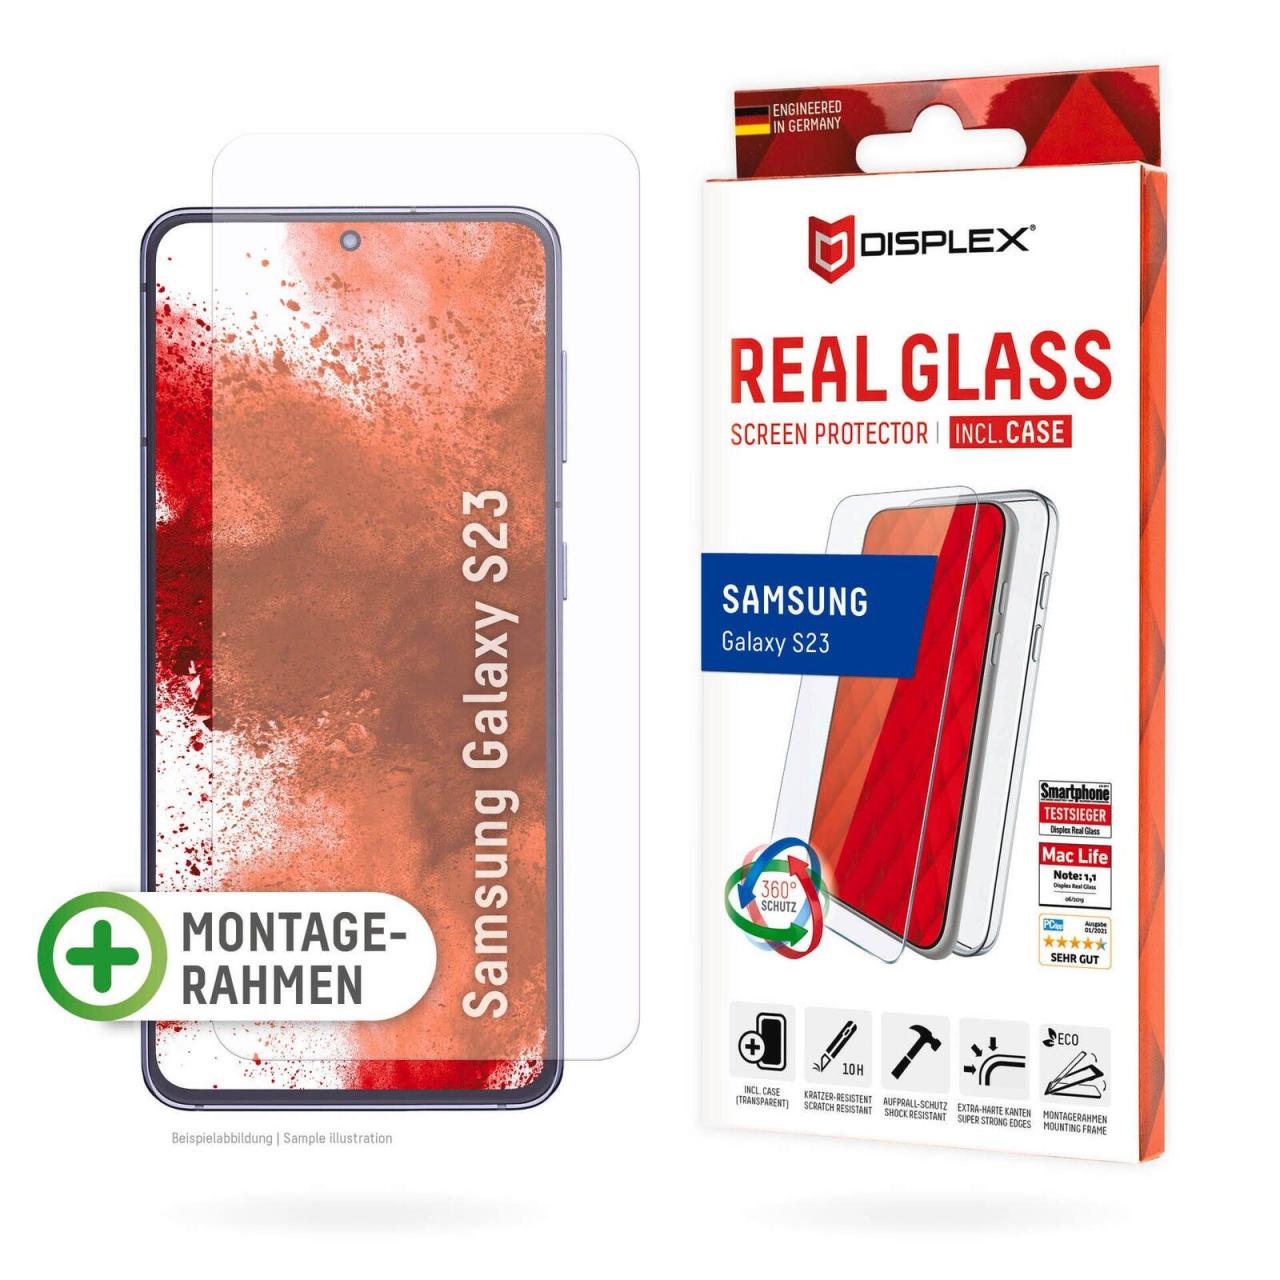 DISPLEX Real Glass + Case für das Samsung Galaxy S23 von Displex